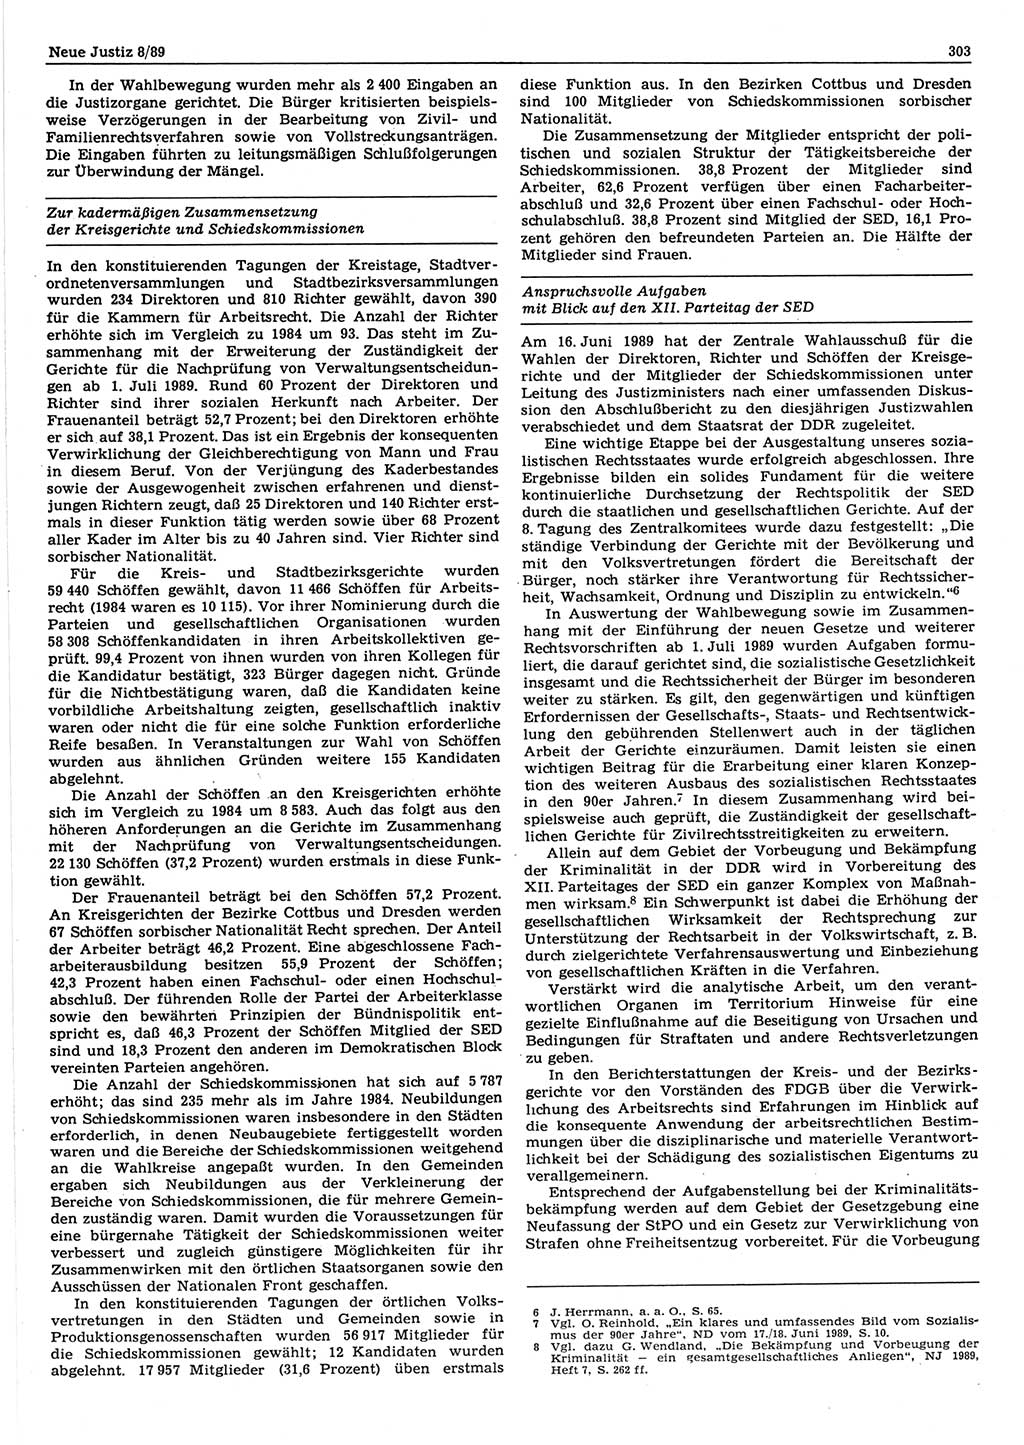 Neue Justiz (NJ), Zeitschrift für sozialistisches Recht und Gesetzlichkeit [Deutsche Demokratische Republik (DDR)], 43. Jahrgang 1989, Seite 303 (NJ DDR 1989, S. 303)